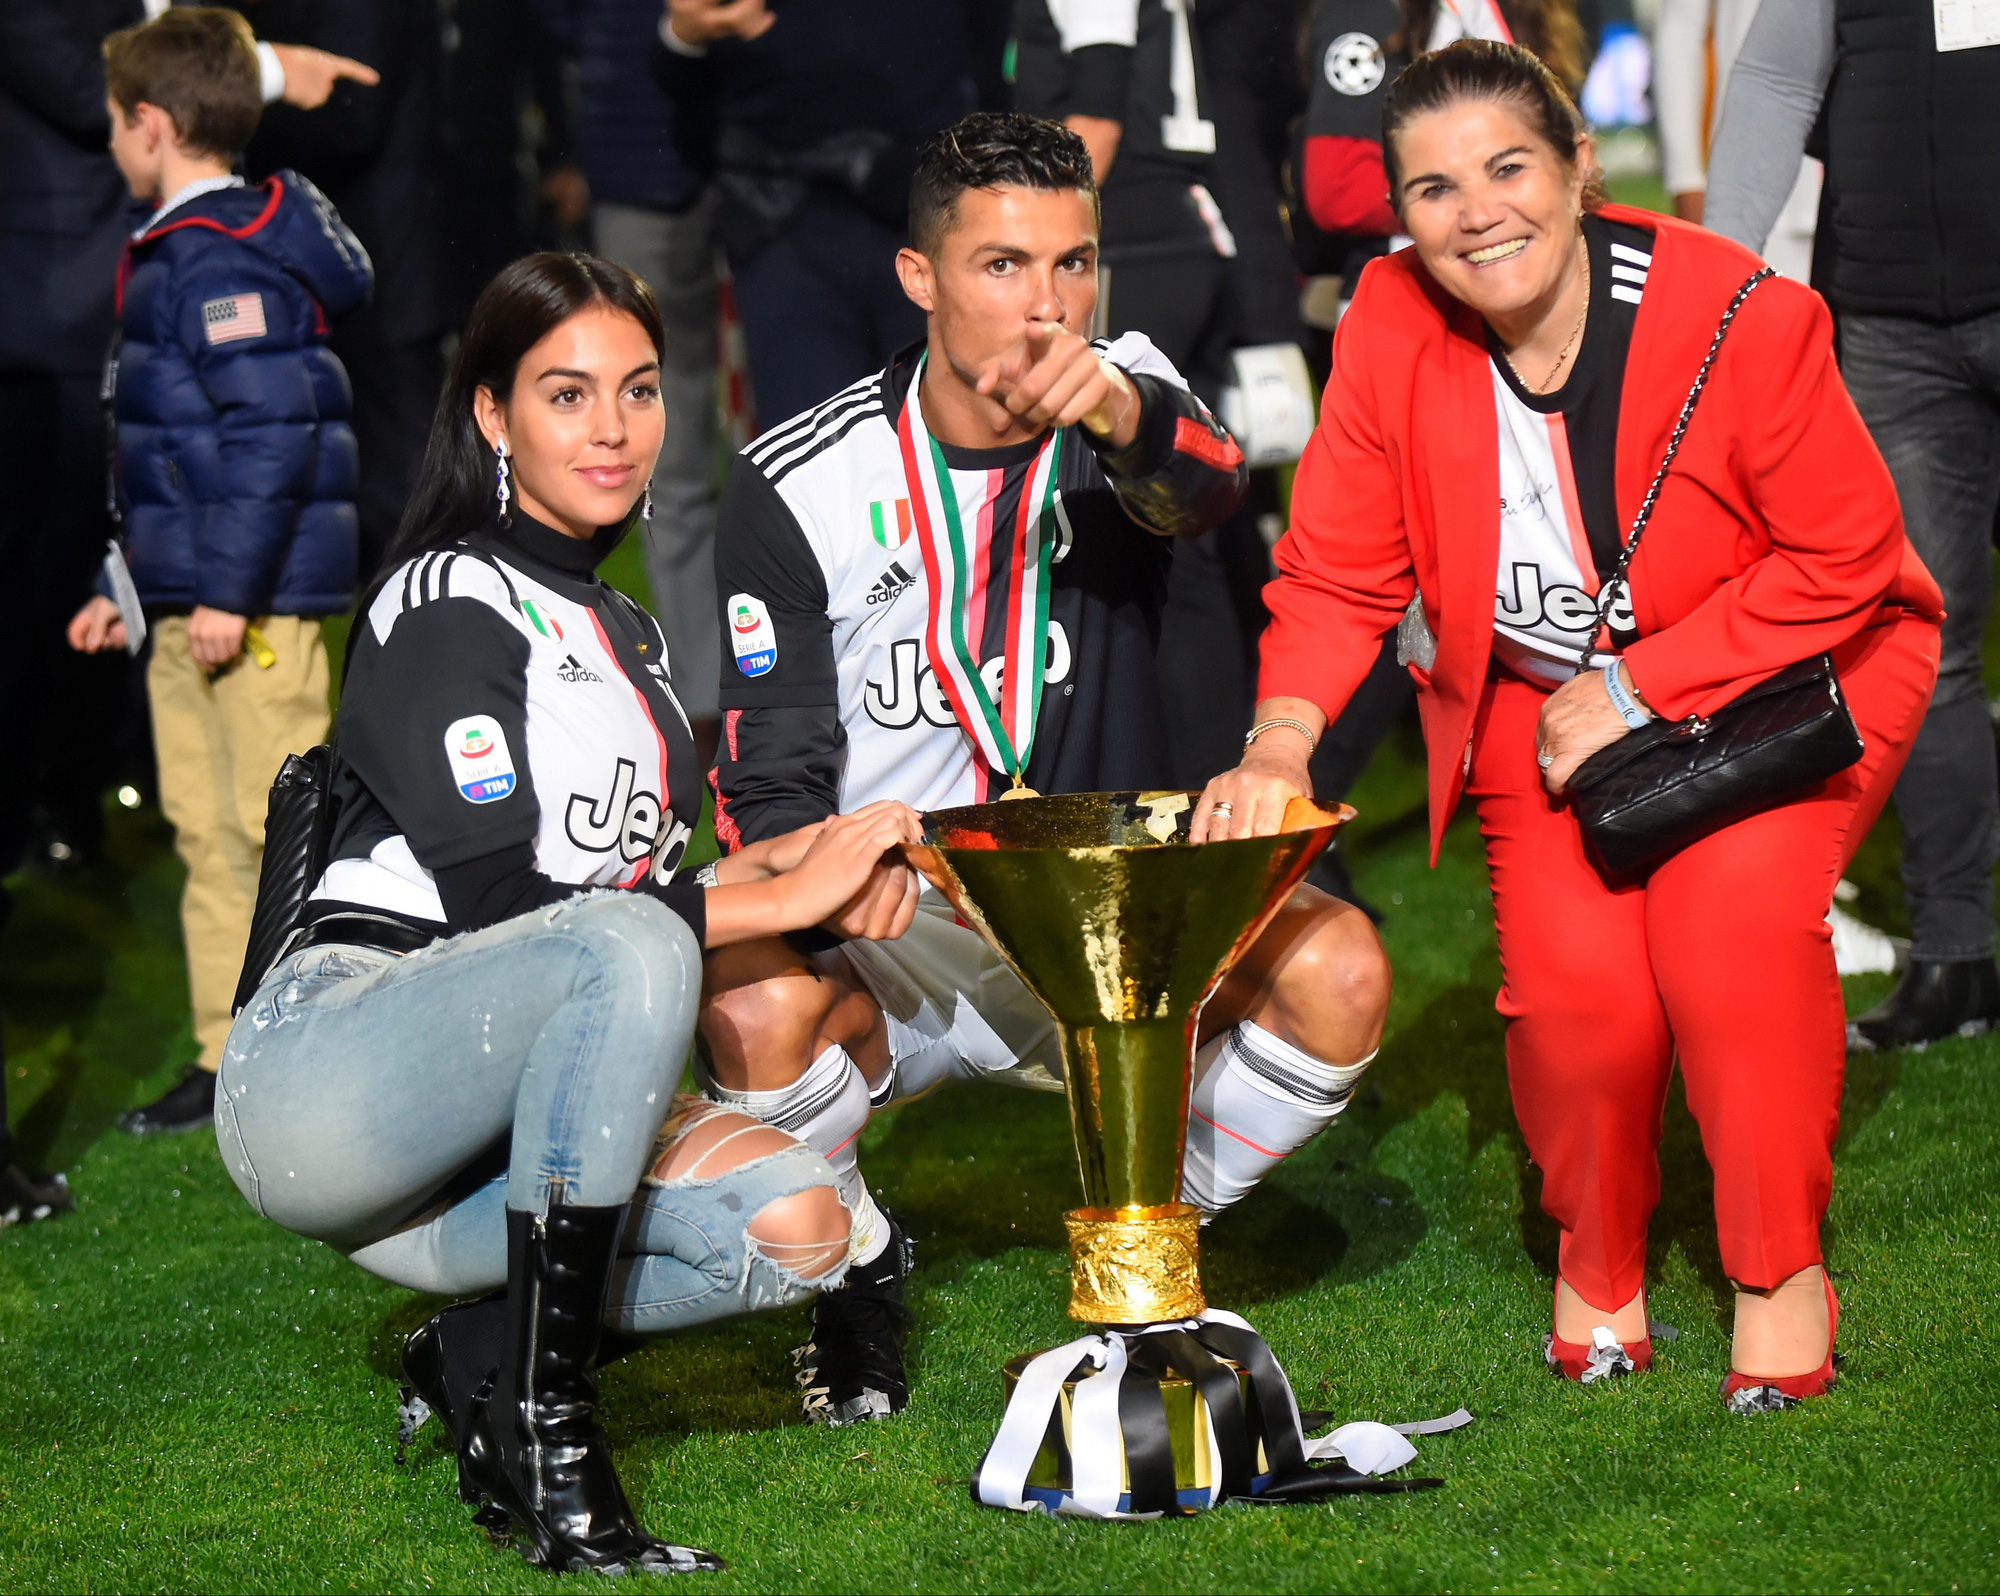 Ronaldo cùng bạn gái vội vã trở về khi nghe tin mẹ đột quỵ, đưa ra cập nhật mới nhất khiến dân tình an lòng - Ảnh 5.